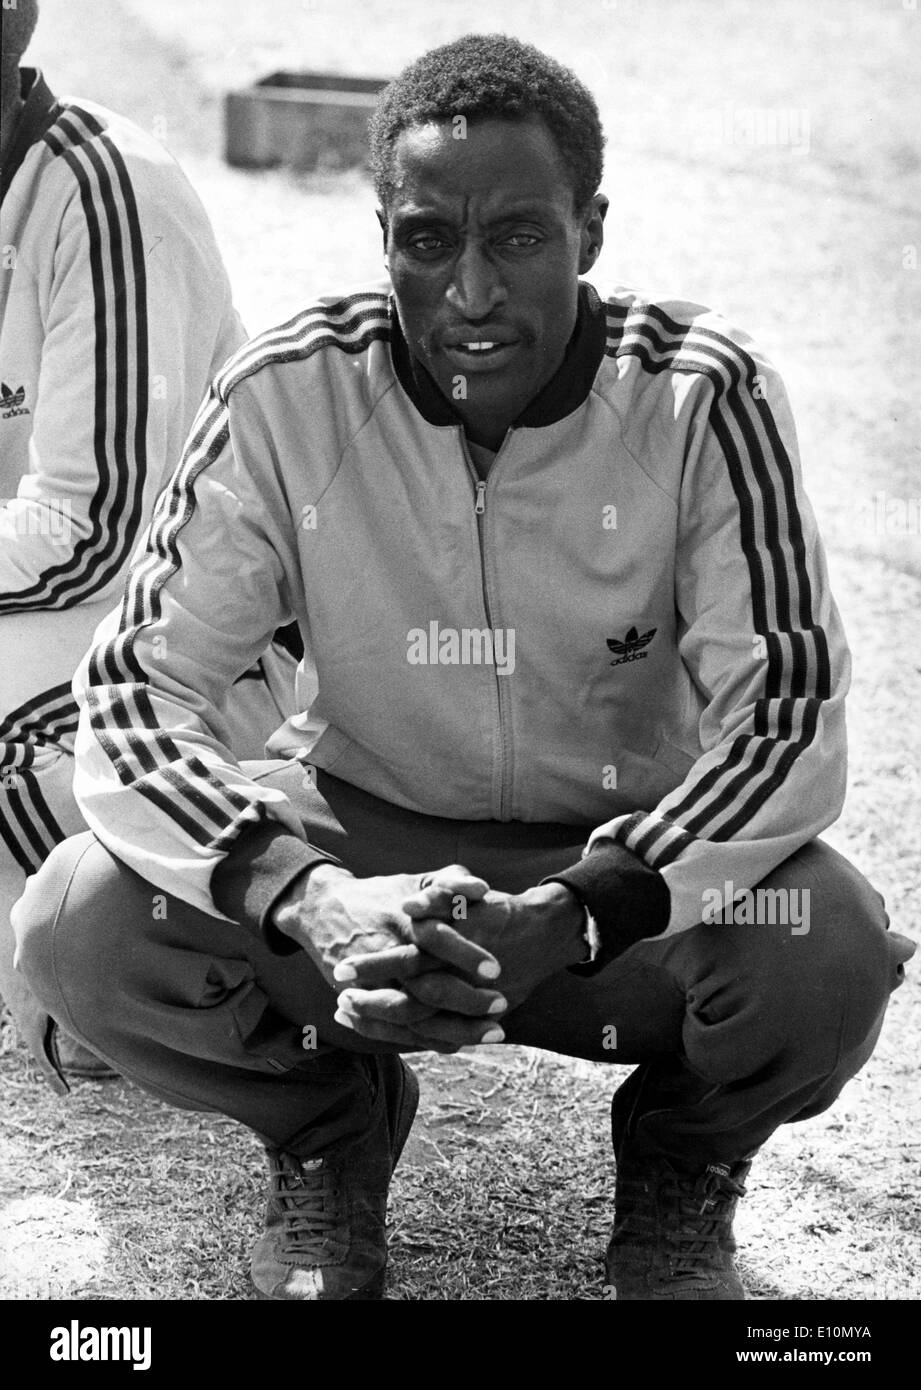 Nairobi, Kenya; Athlete CHARLES ASATI, Commonwealth Games 400 meters champion in Edinburgh 1970. Stock Photo